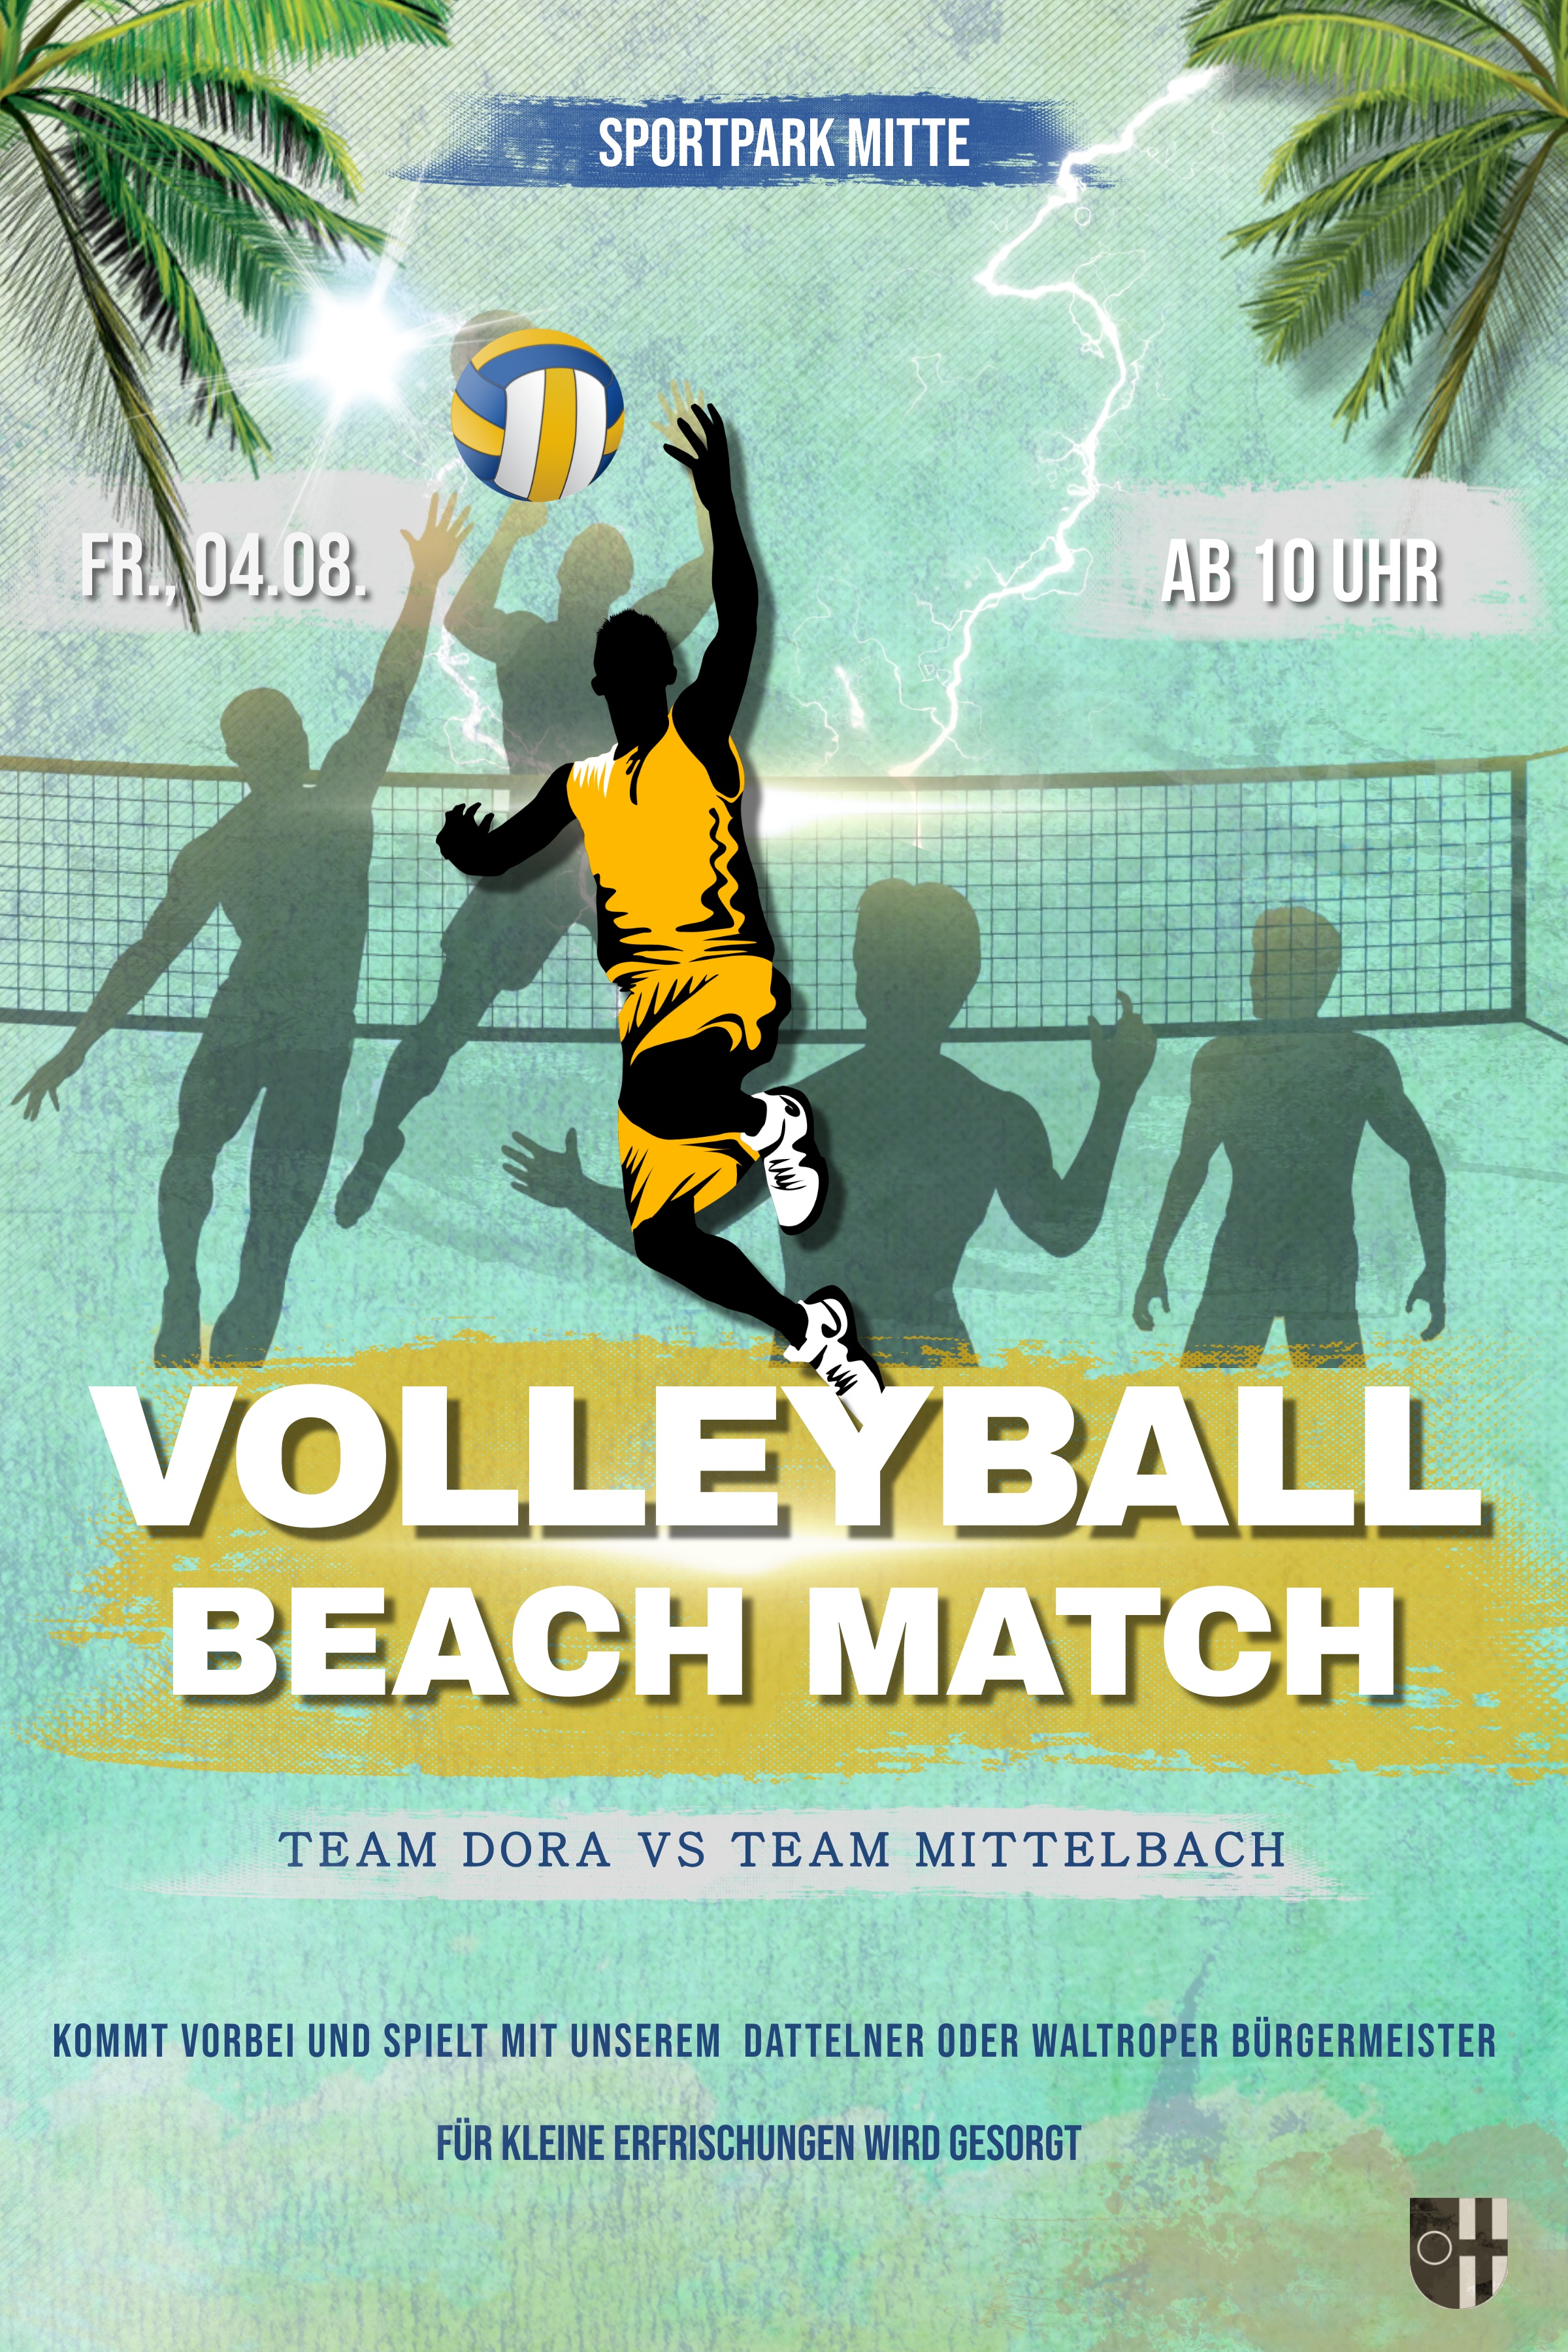 Das Bild zeigt den Flyer für das Volleyball-Turnier am 04.08.23 ab 10 Uhr im Sportpark Mitte.